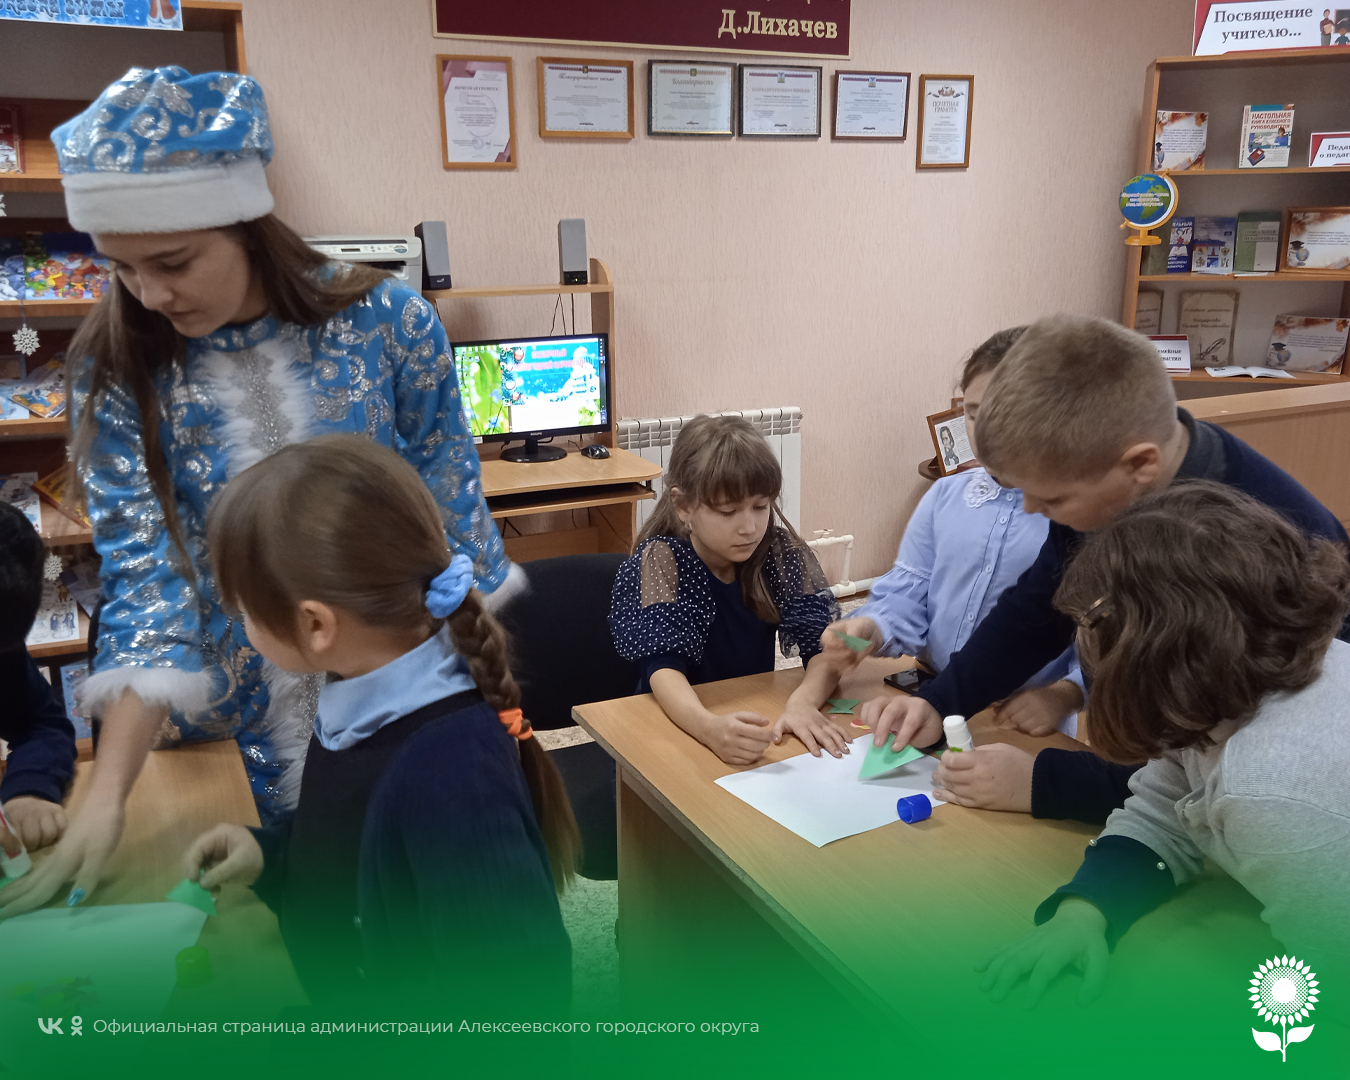 В преддверии новогодних праздников в Жуковской модельной библиотеке состоялась конкурсно-игровая программа «Чудеса под Новый год».